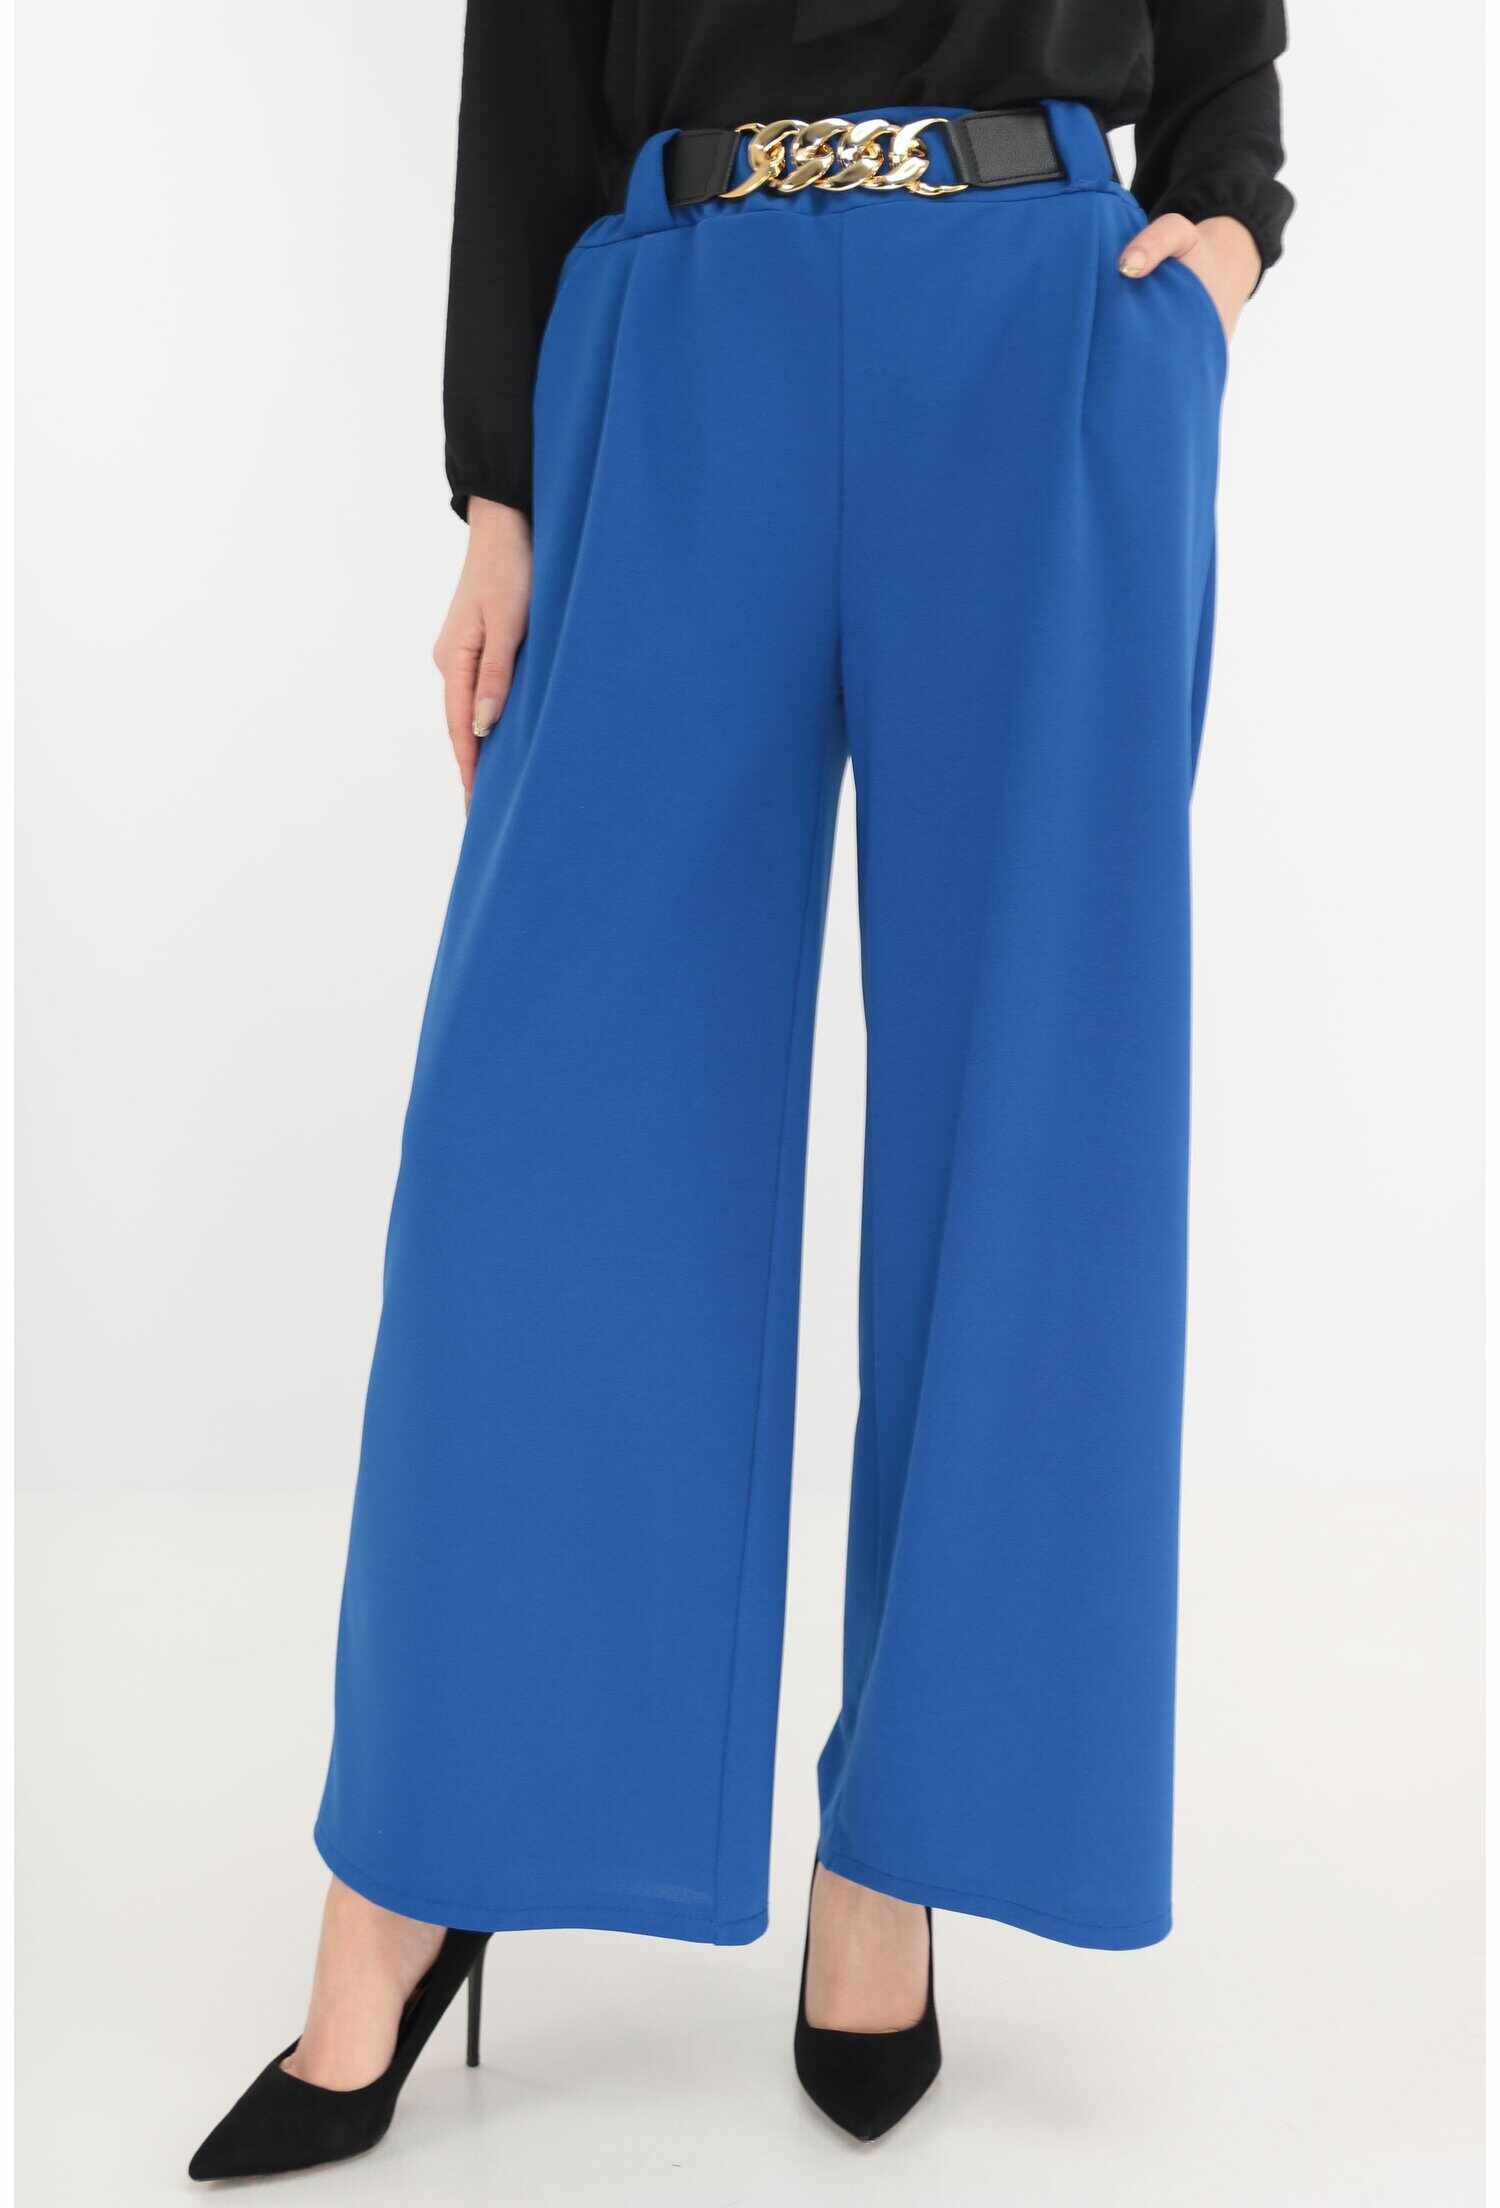 Pantaloni lejeri albastri cu o curea elastica in talie